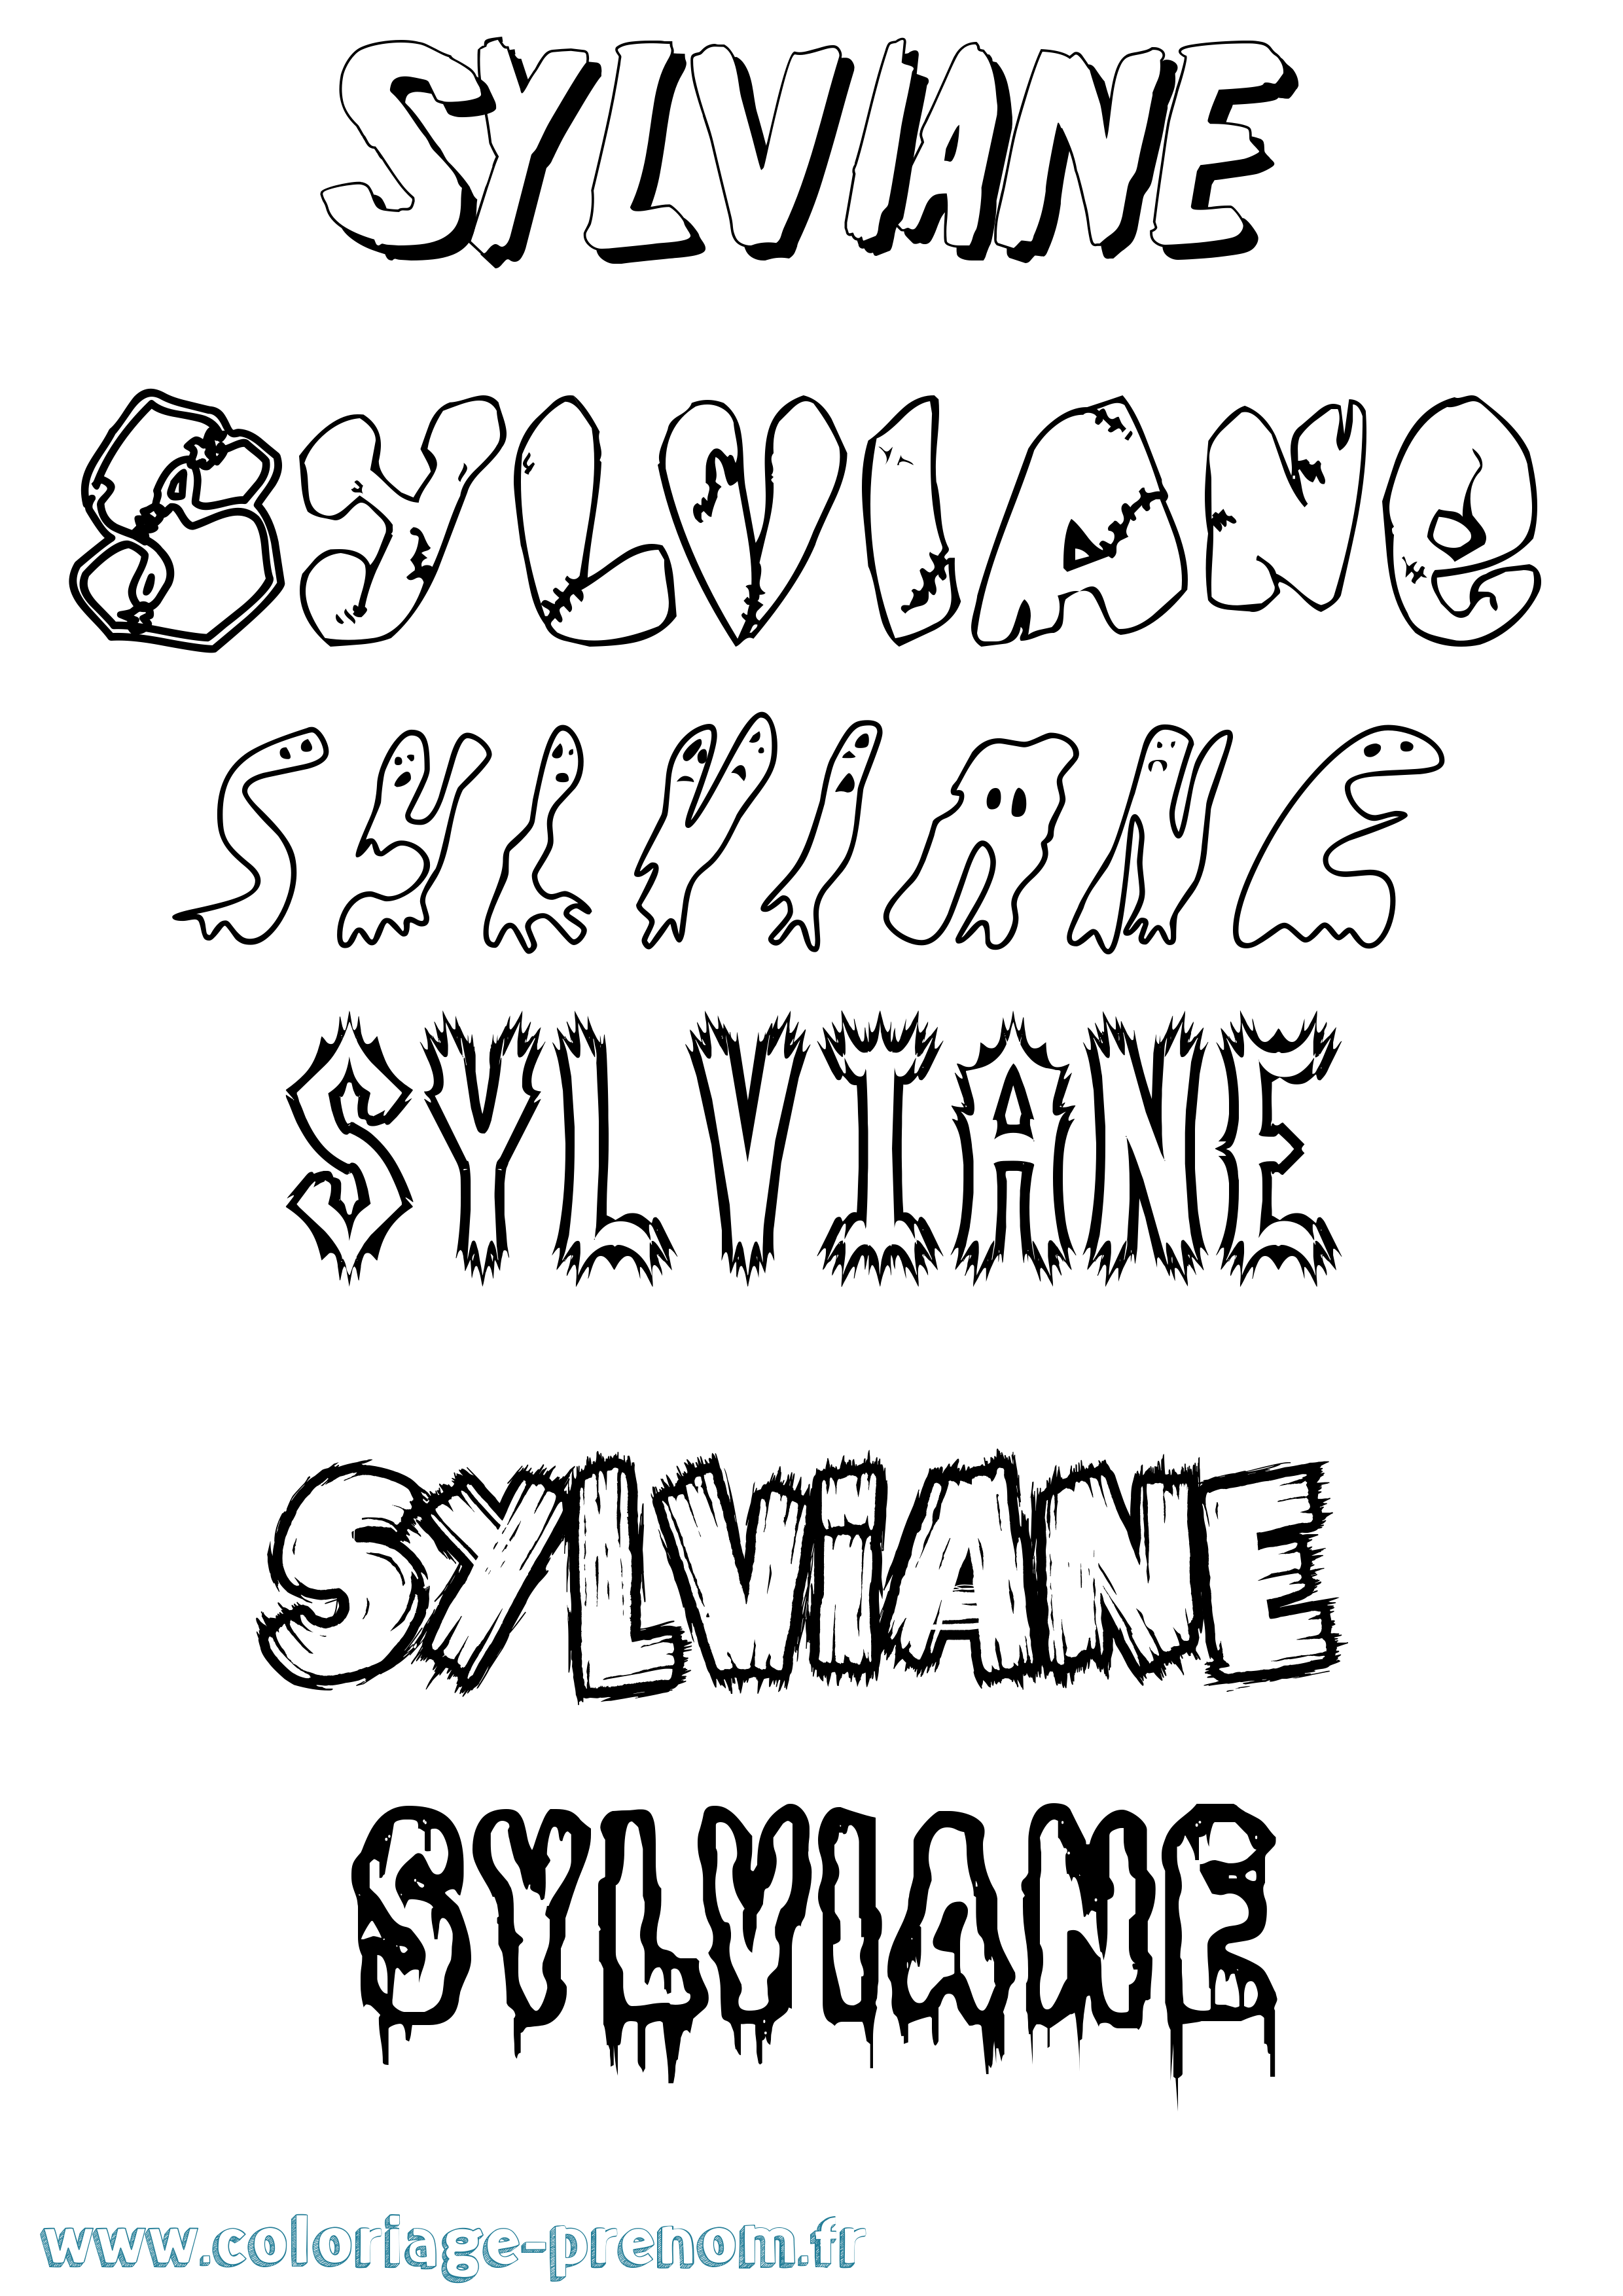 Coloriage prénom Sylviane Frisson